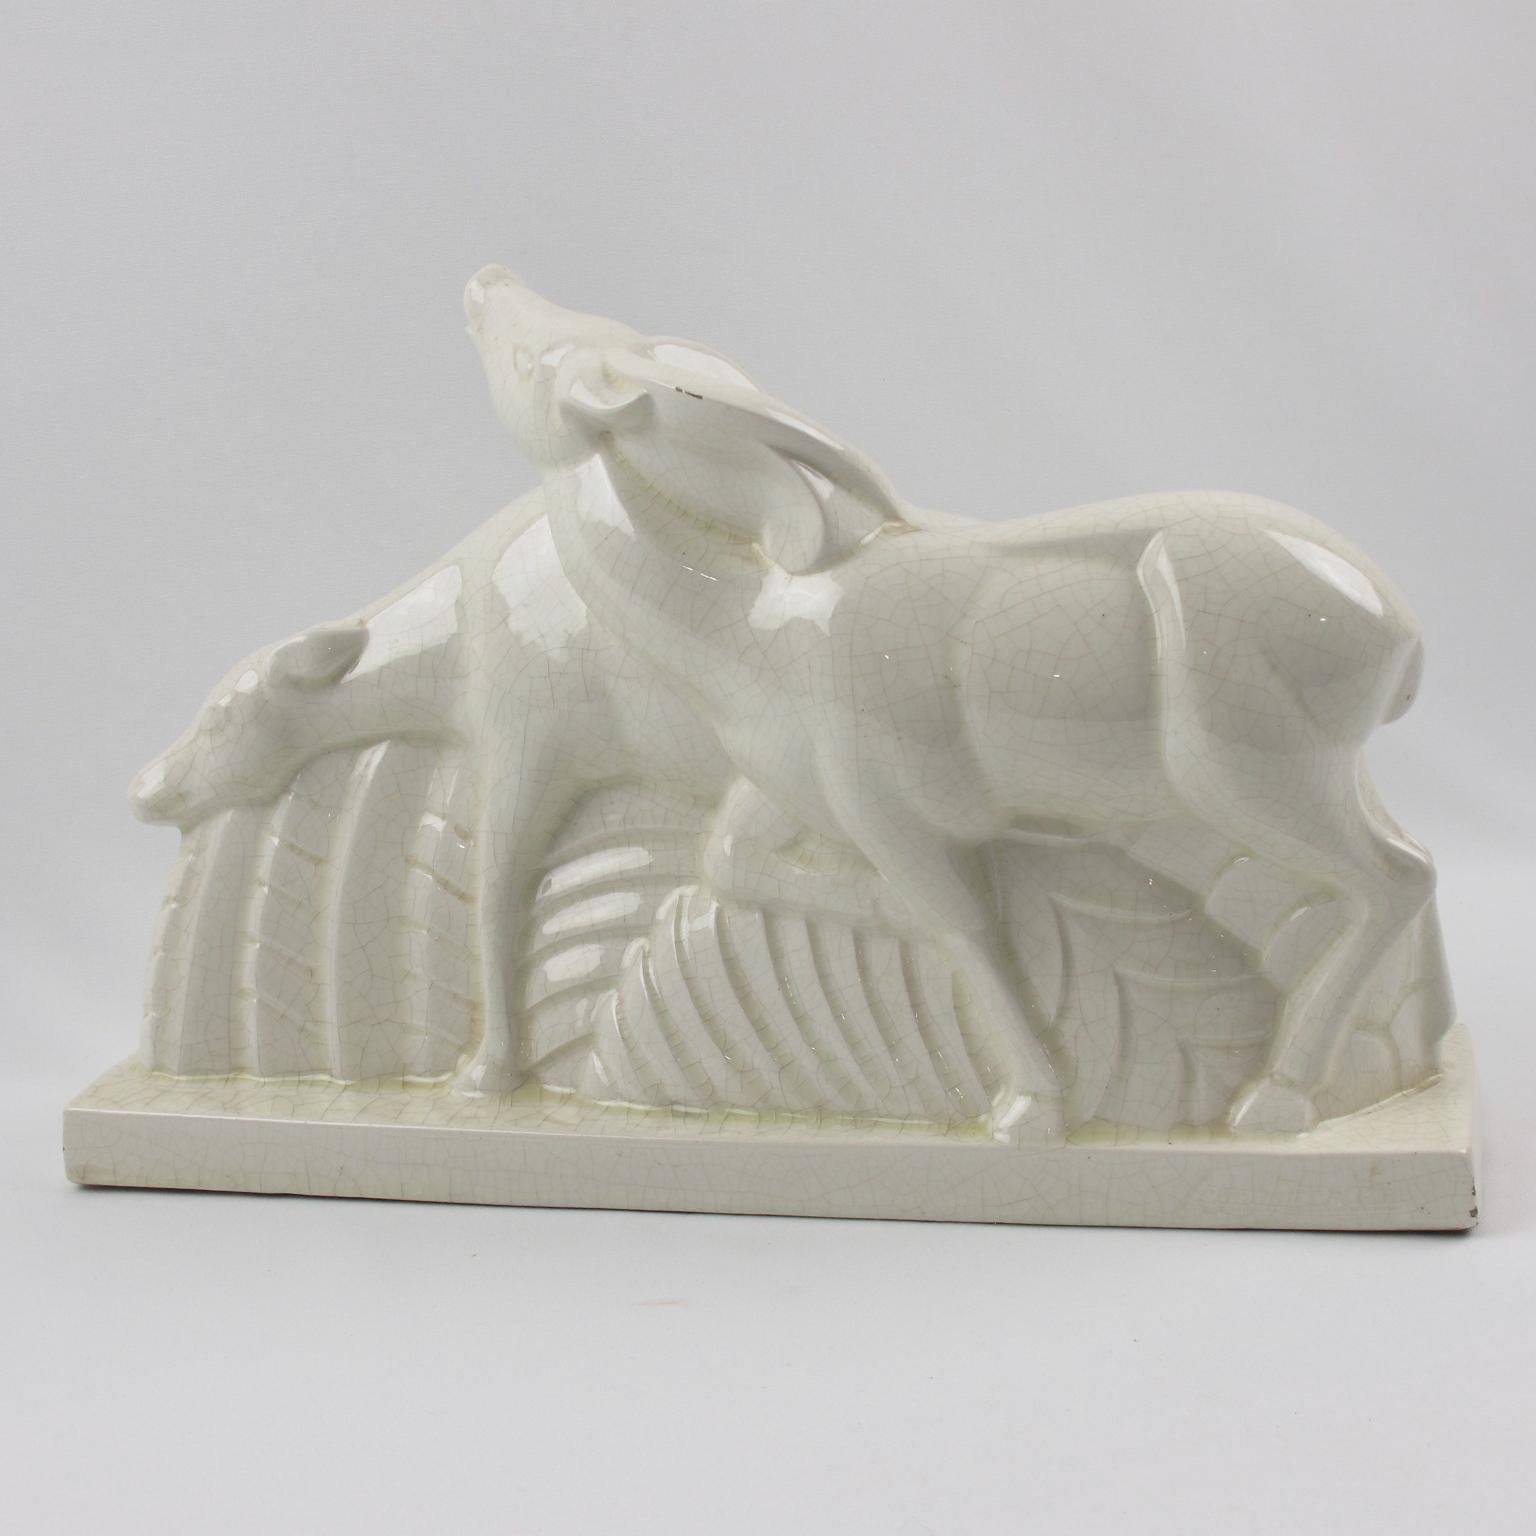 Diese von Charles Lemanceau (1905-1980) entworfene und von der Manufaktur Saint-Clement in Frankreich hergestellte Keramikskulptur mit Craquelé-Glasur im typischen Stil des Art déco zeigt ein Hirsch- oder Antilopenpaar. Das Kunstwerk ist am Rand des